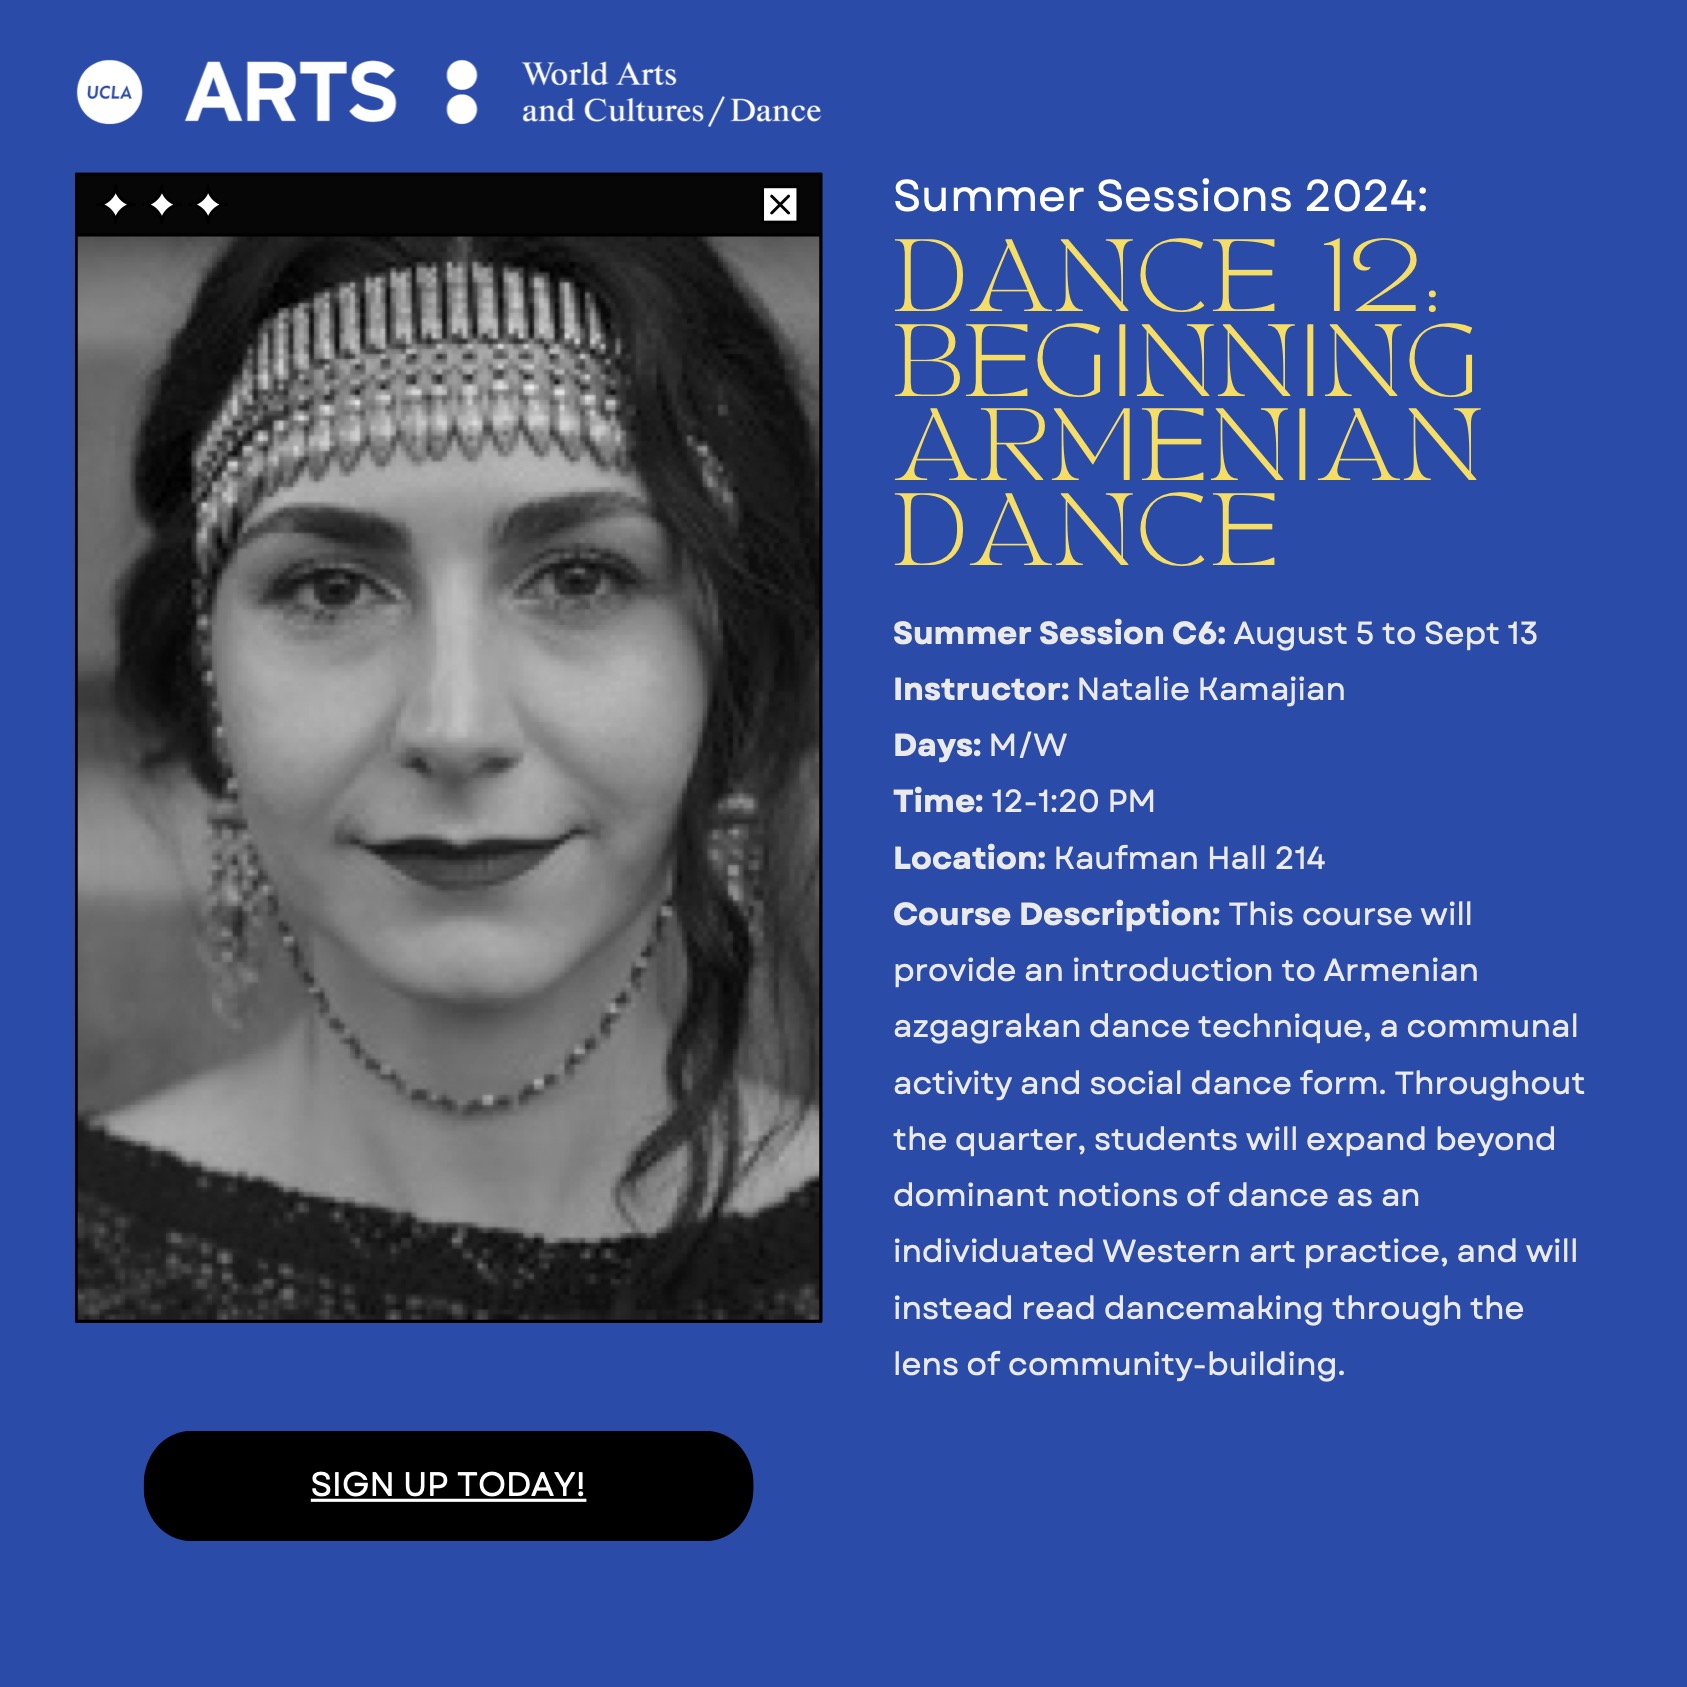 DANCE 12: Beginning Armenian Dance